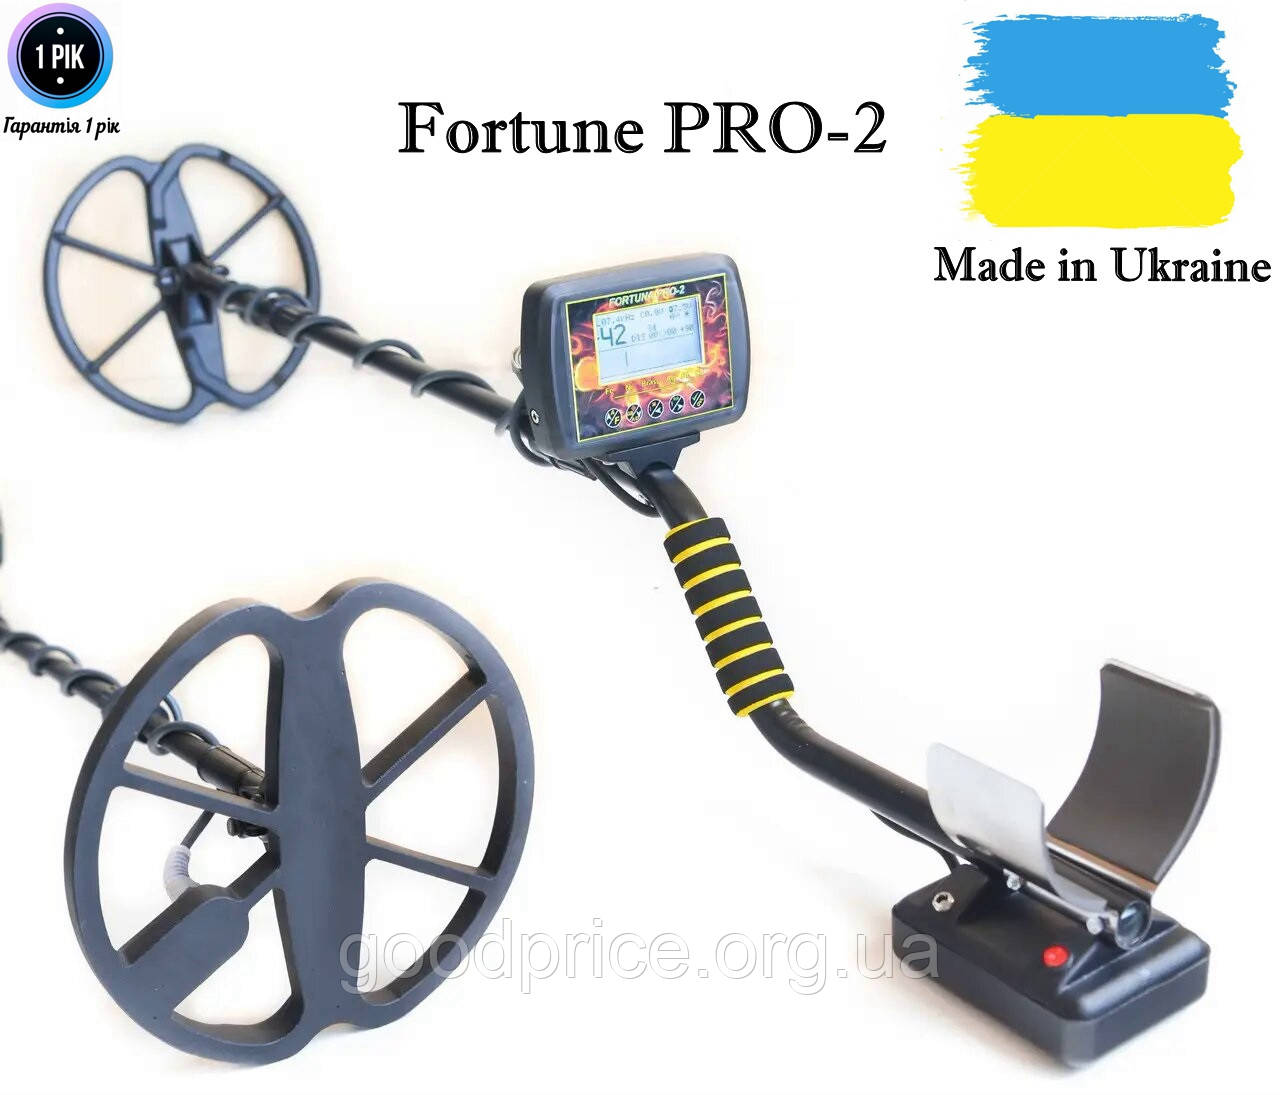 Металошукач Fortune PRO-2 / Фортуна ПРО-2 LCD-дисплей 7*4 з безкоштовною доставкою!